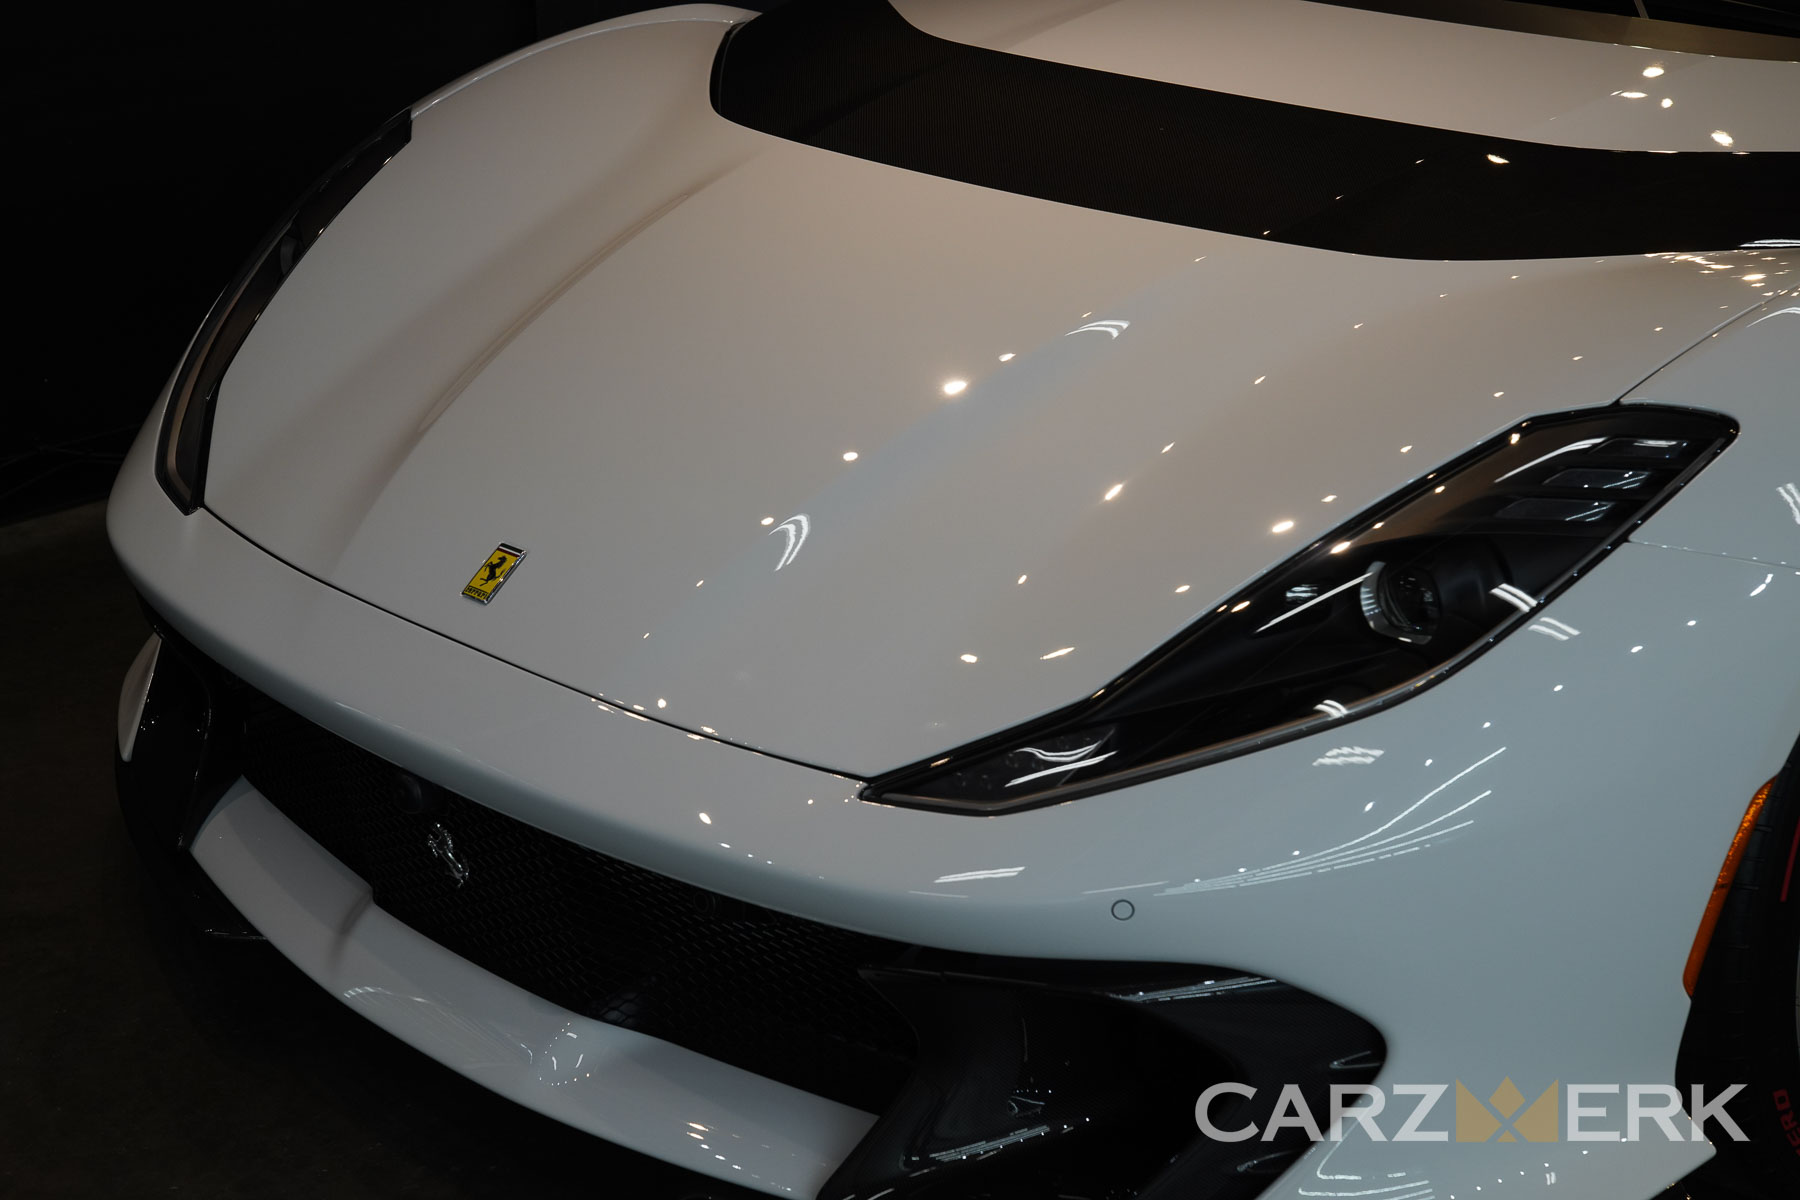 2022 Ferrari 812 Competizione - Bianco Cervino - Front Hood after Suntek Paint Protection Film